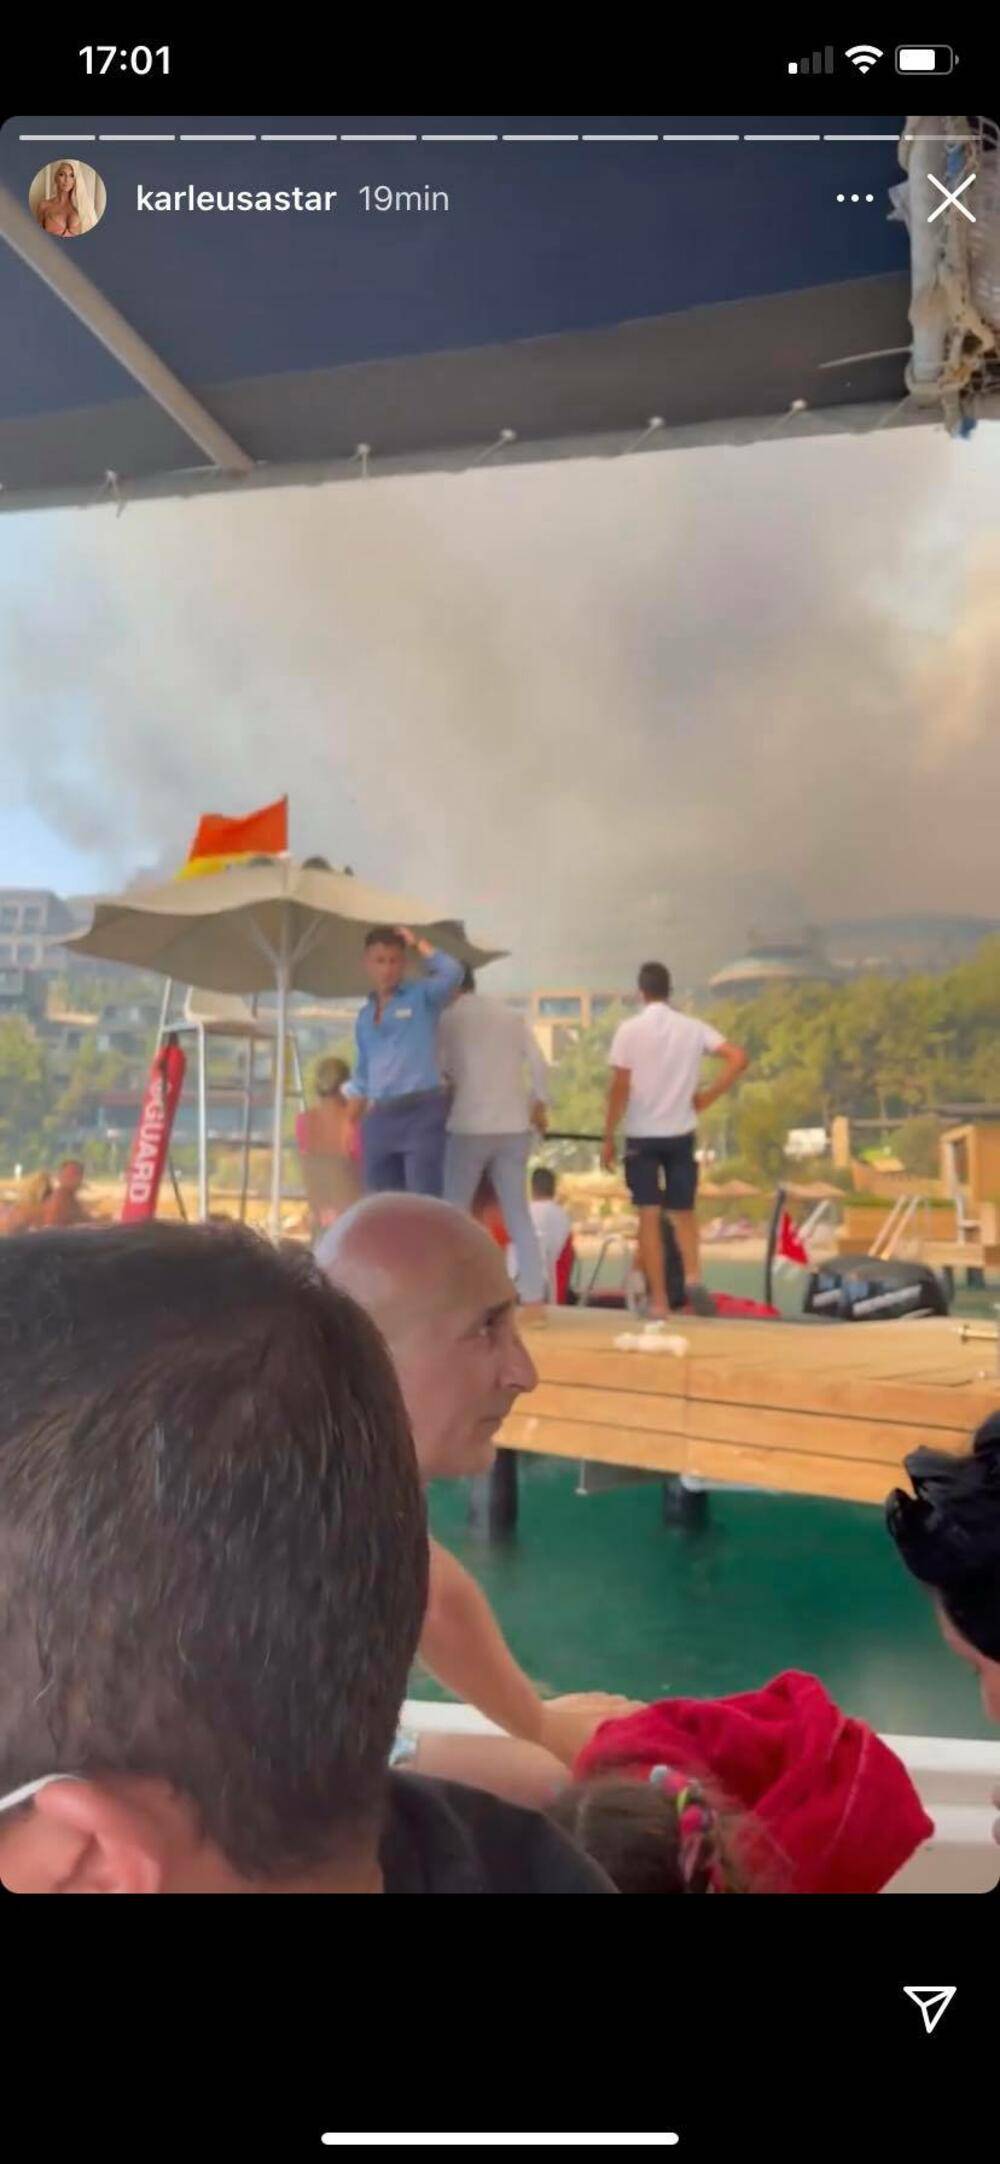 Karleušu s djecom evakuirali iz hotela zbog požara: Ovo je kaos